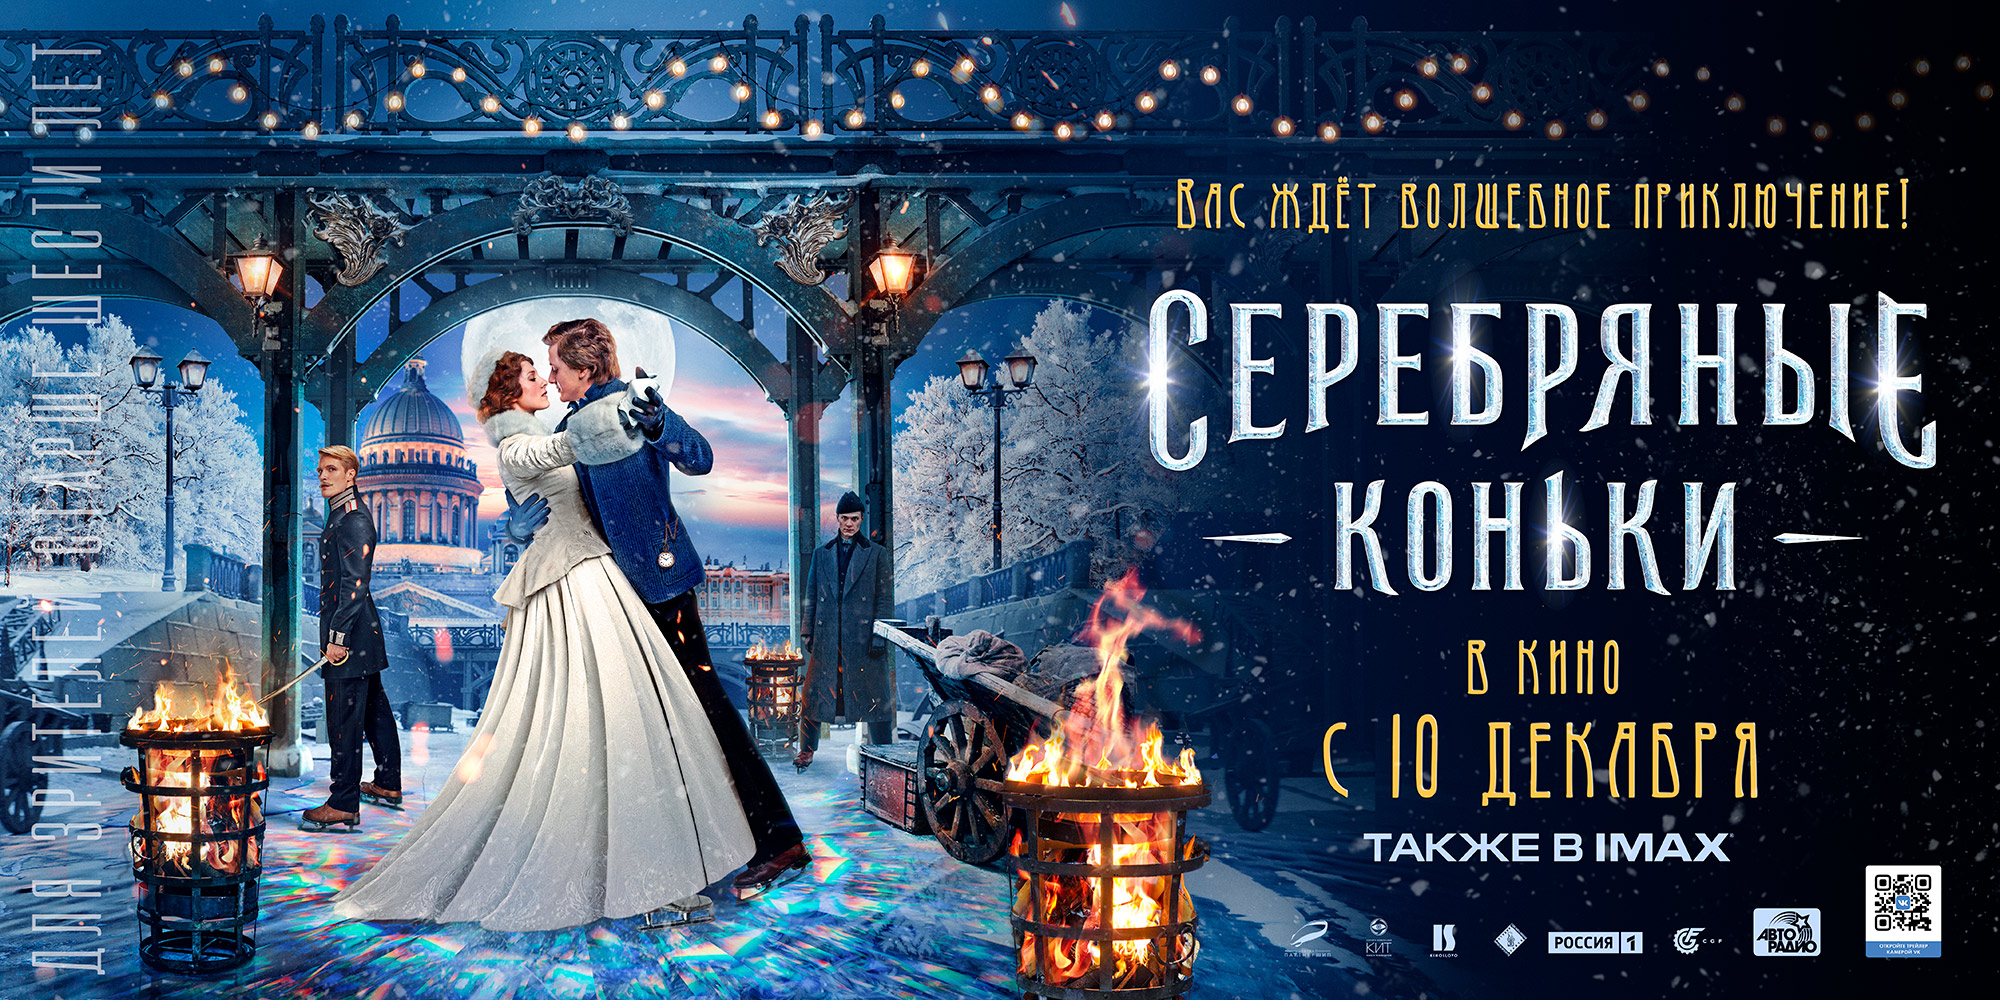 Российские зрители смогут увидеть новогоднее романтическое приключение «СЕРЕБРЯНЫЕ КОНЬКИ» на больших экранах IMAX